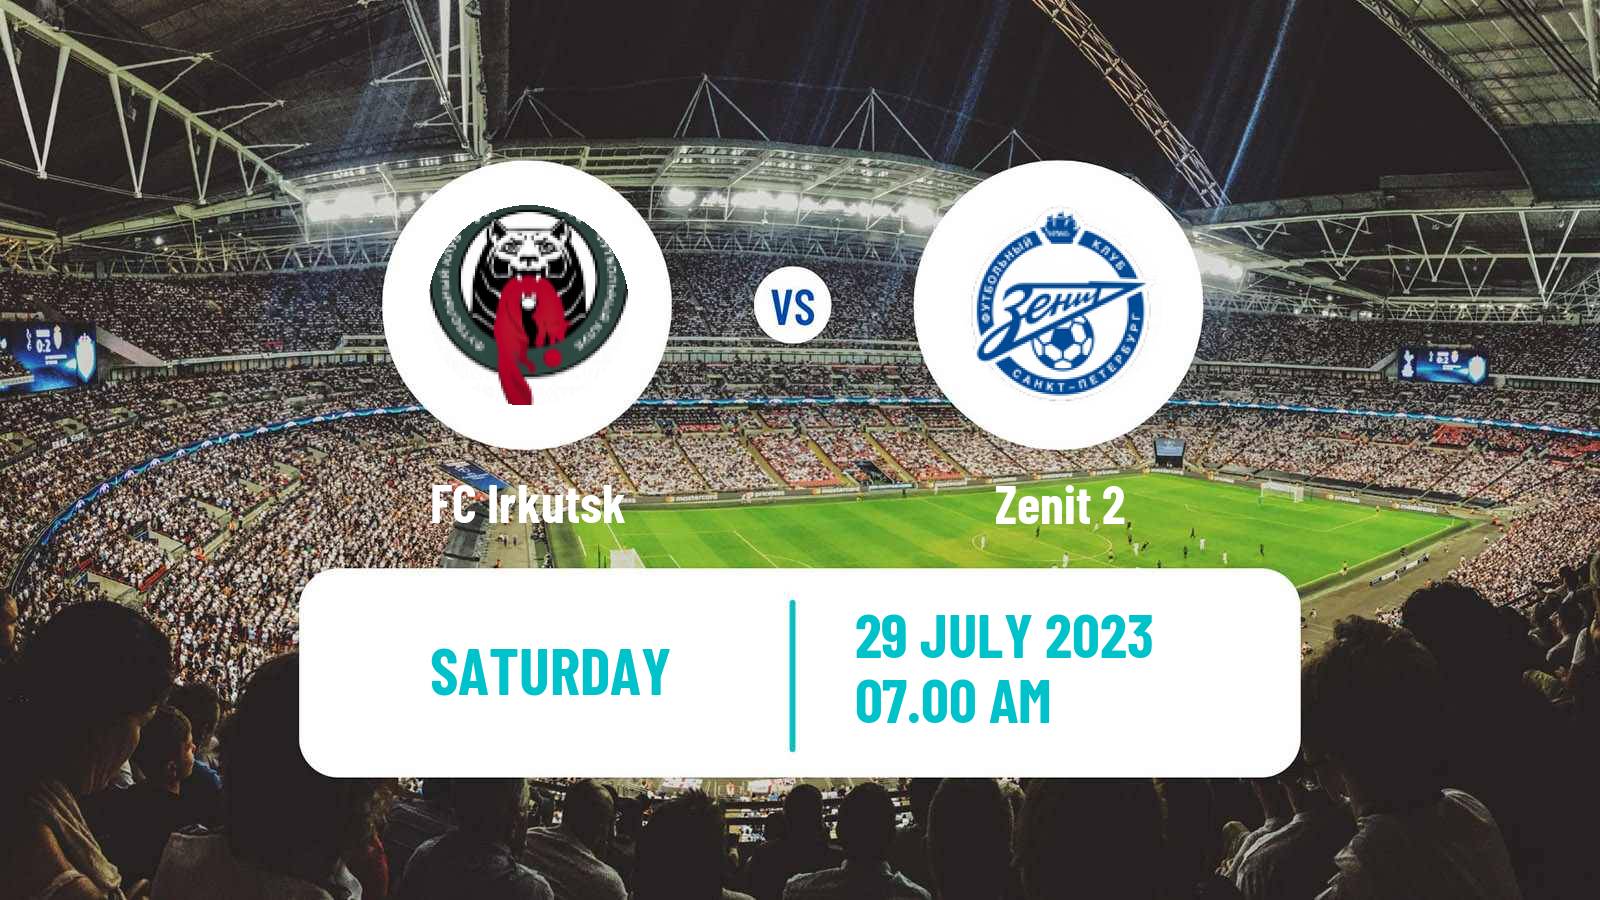 Soccer FNL 2 Division B Group 2 Irkutsk - Zenit 2